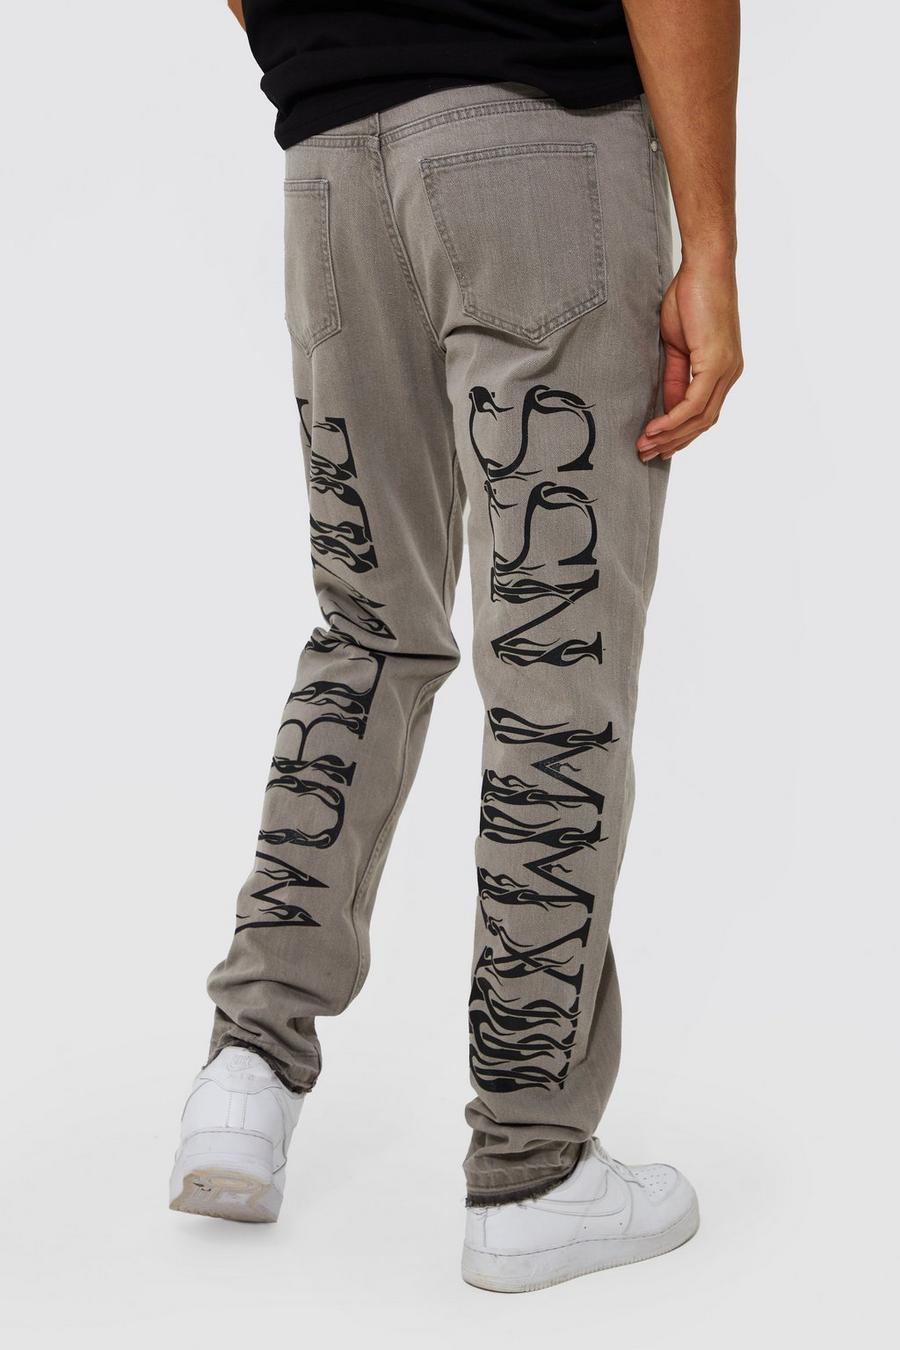 Tall schmale Jeans mit Rissen und Print, Light grey grau